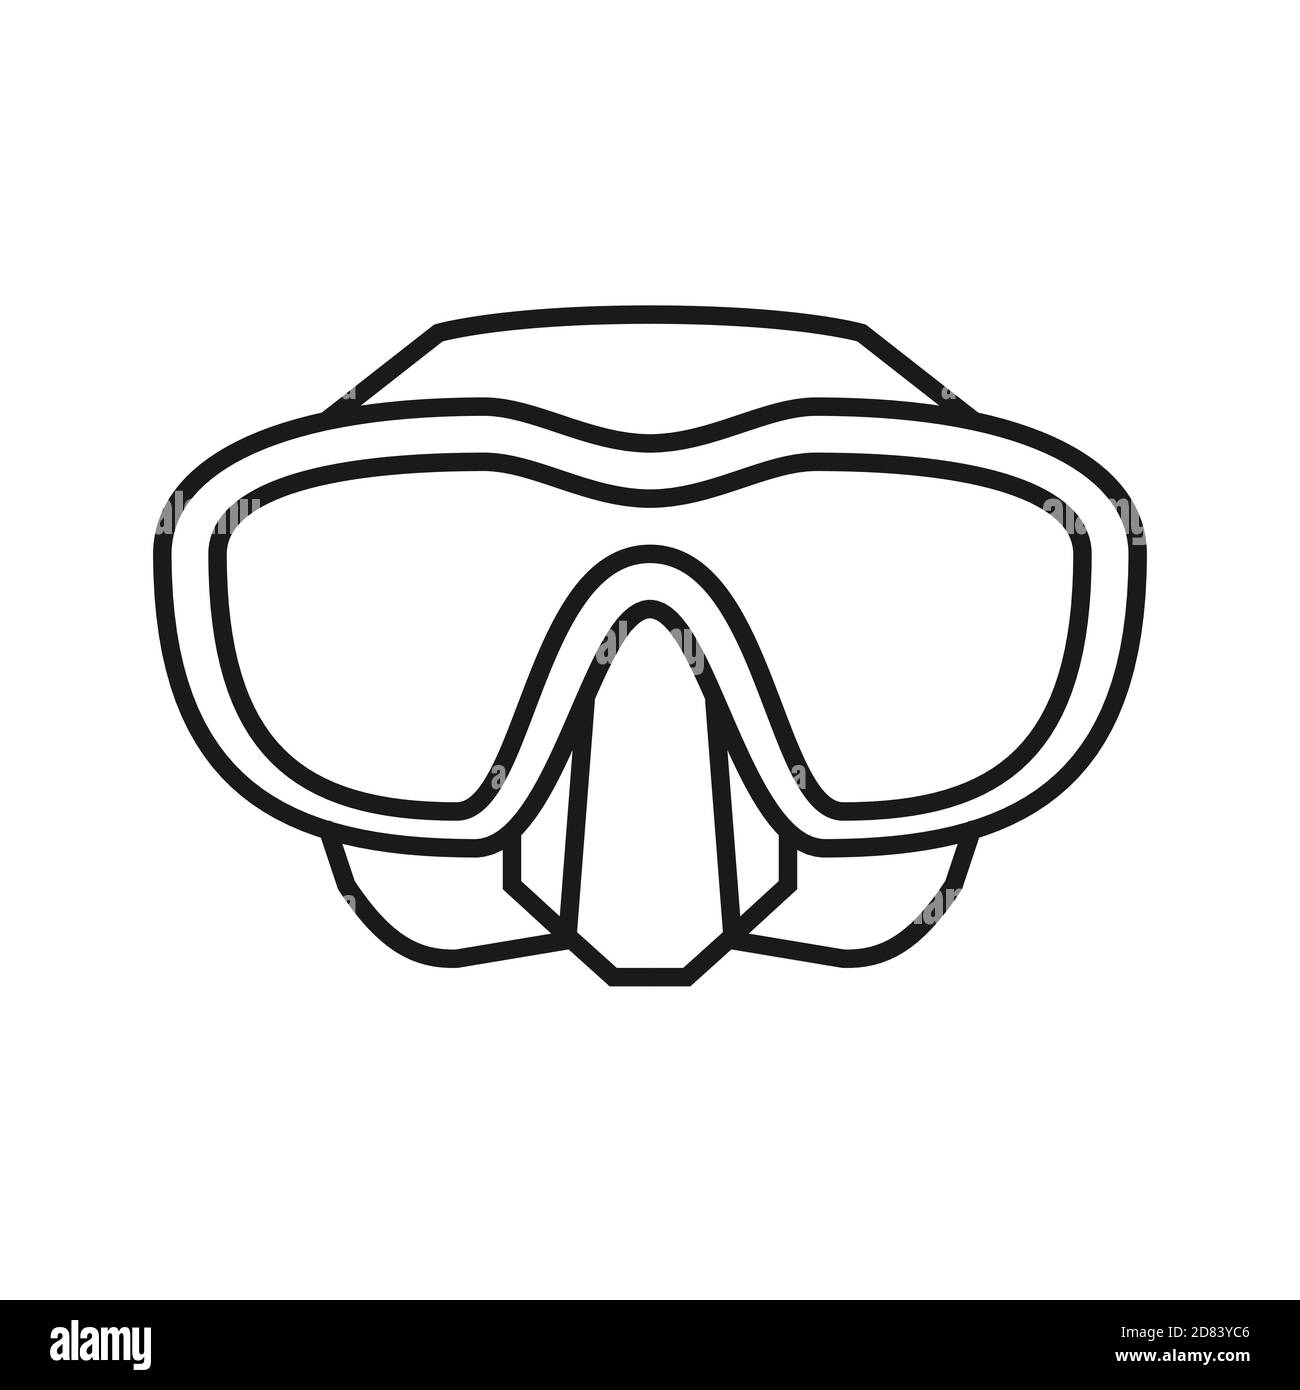 Maschera subacquea con occhiali. Icona maschera snorkeling. Attrezzature per immersioni subacquee e freewiving. Illustrazione Vettoriale